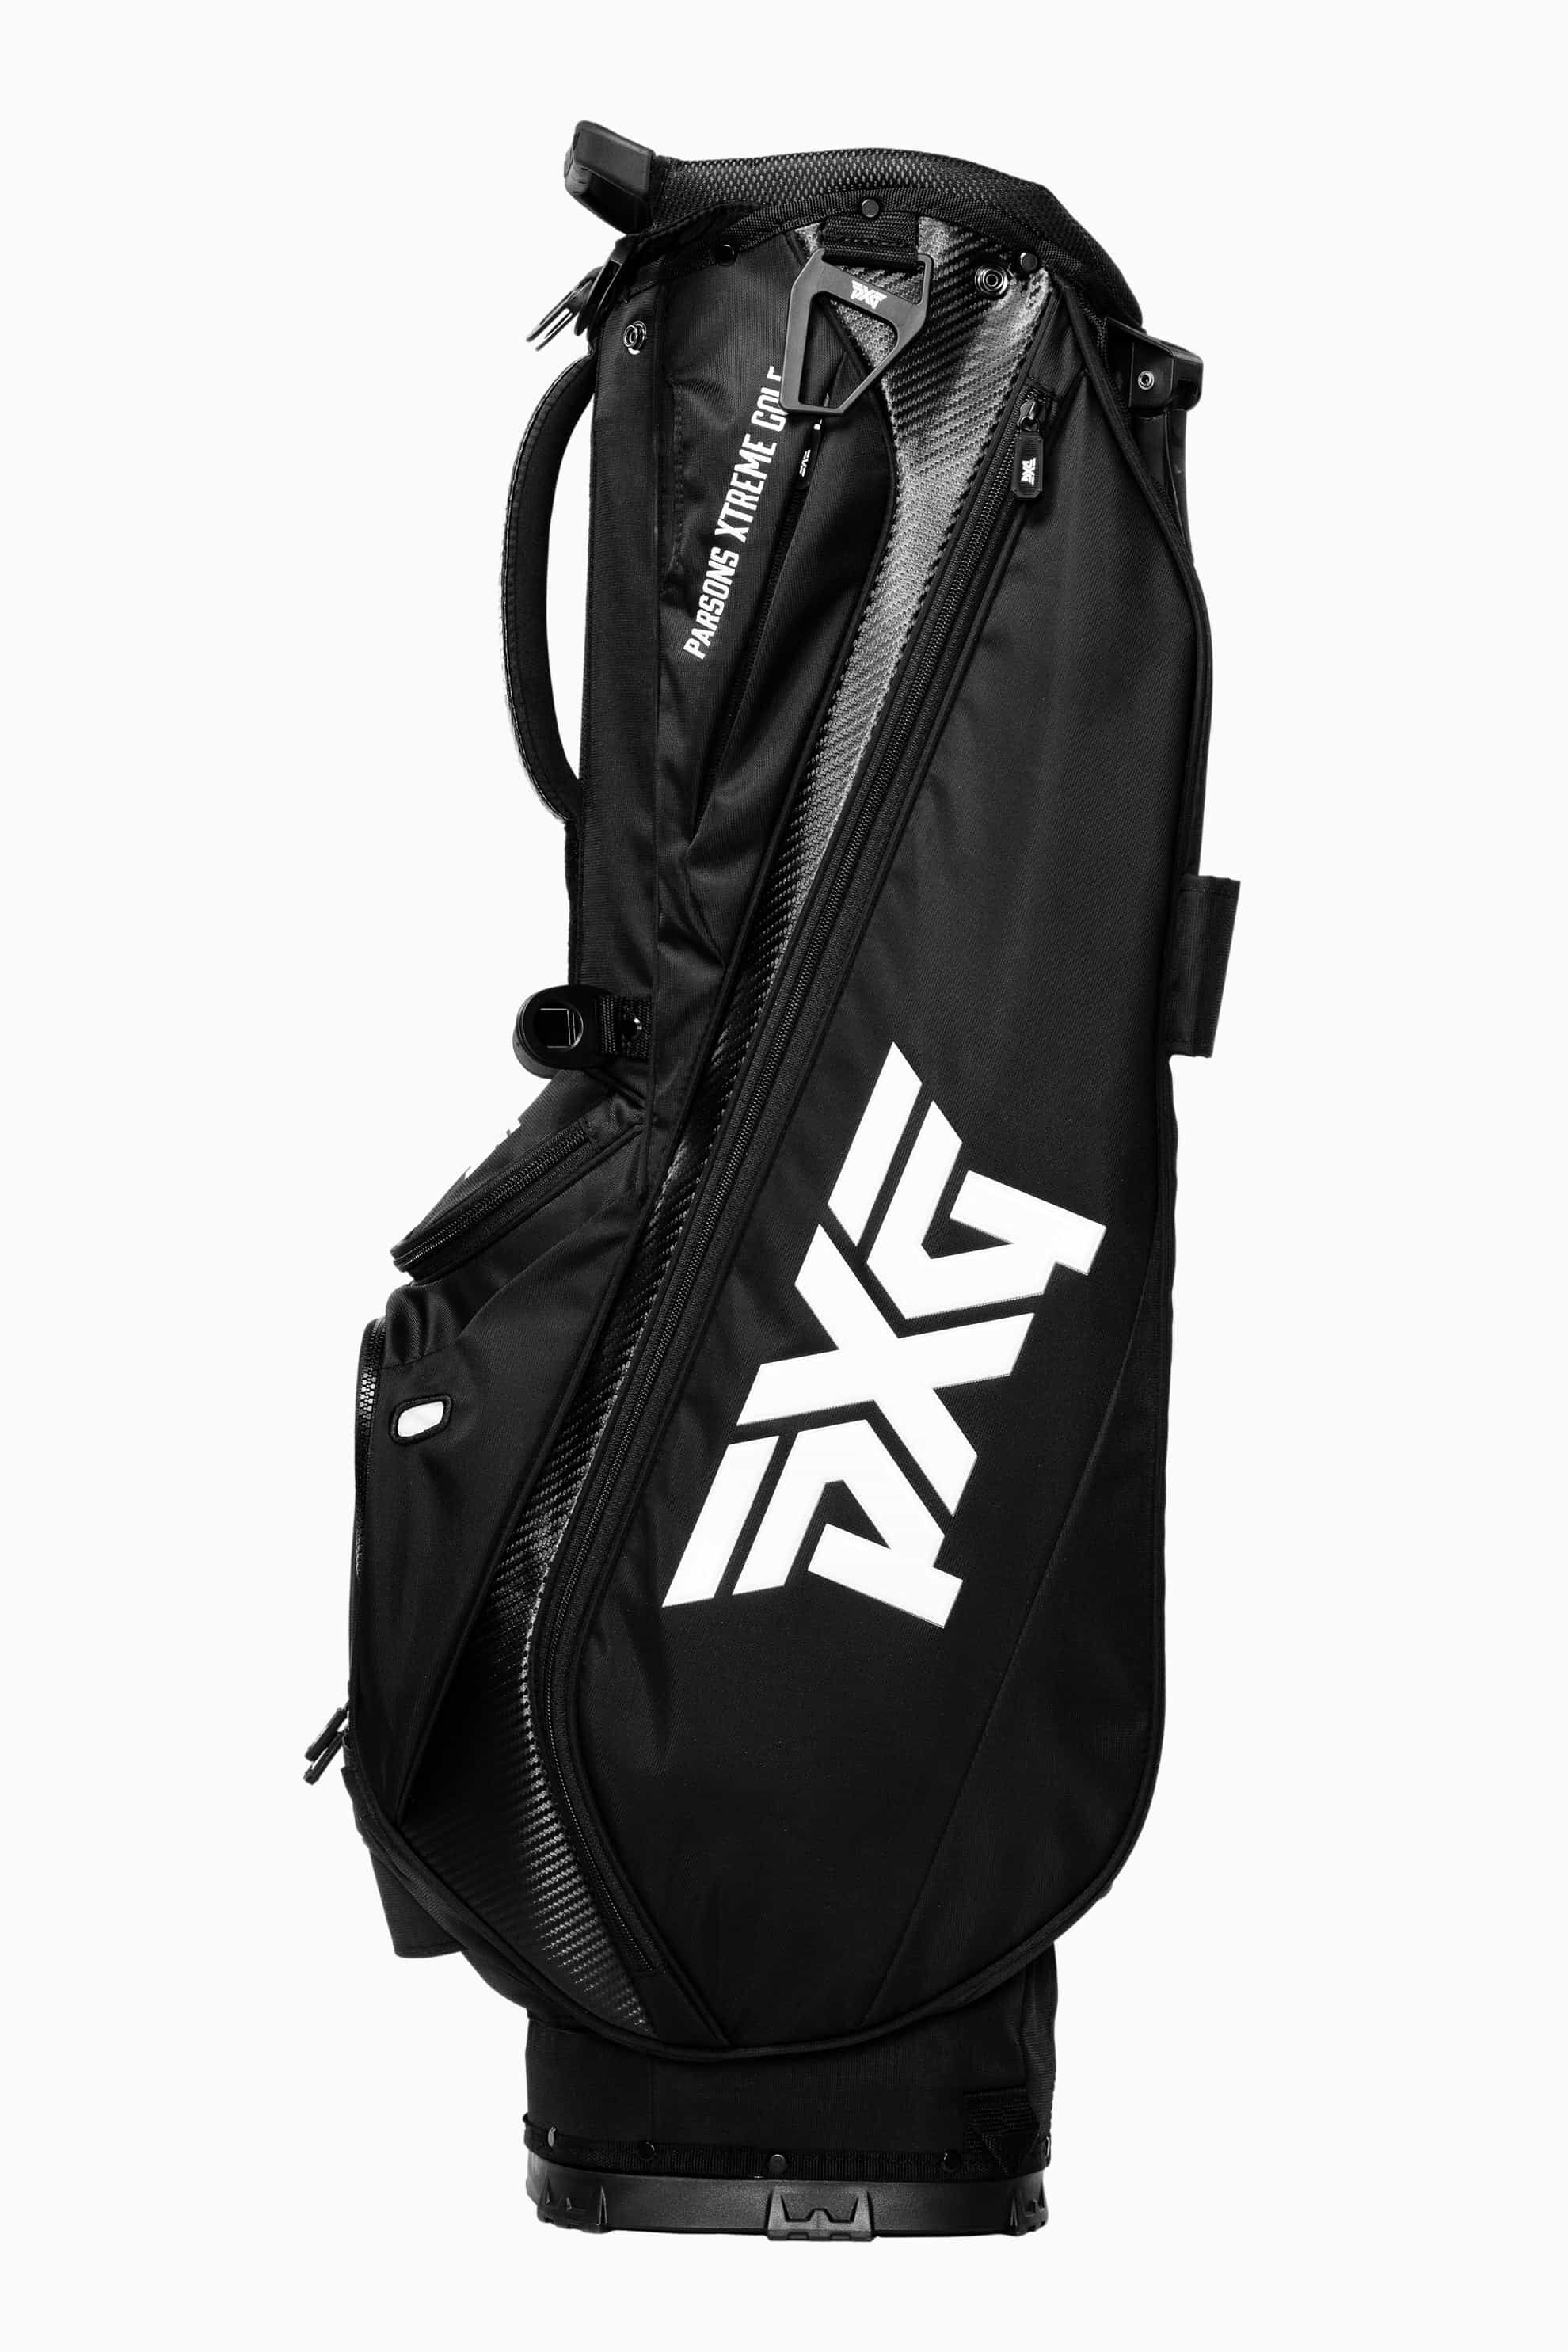 LIghtweight Carry Stand Bag | Golf Bags | Standing, Carry & Cart